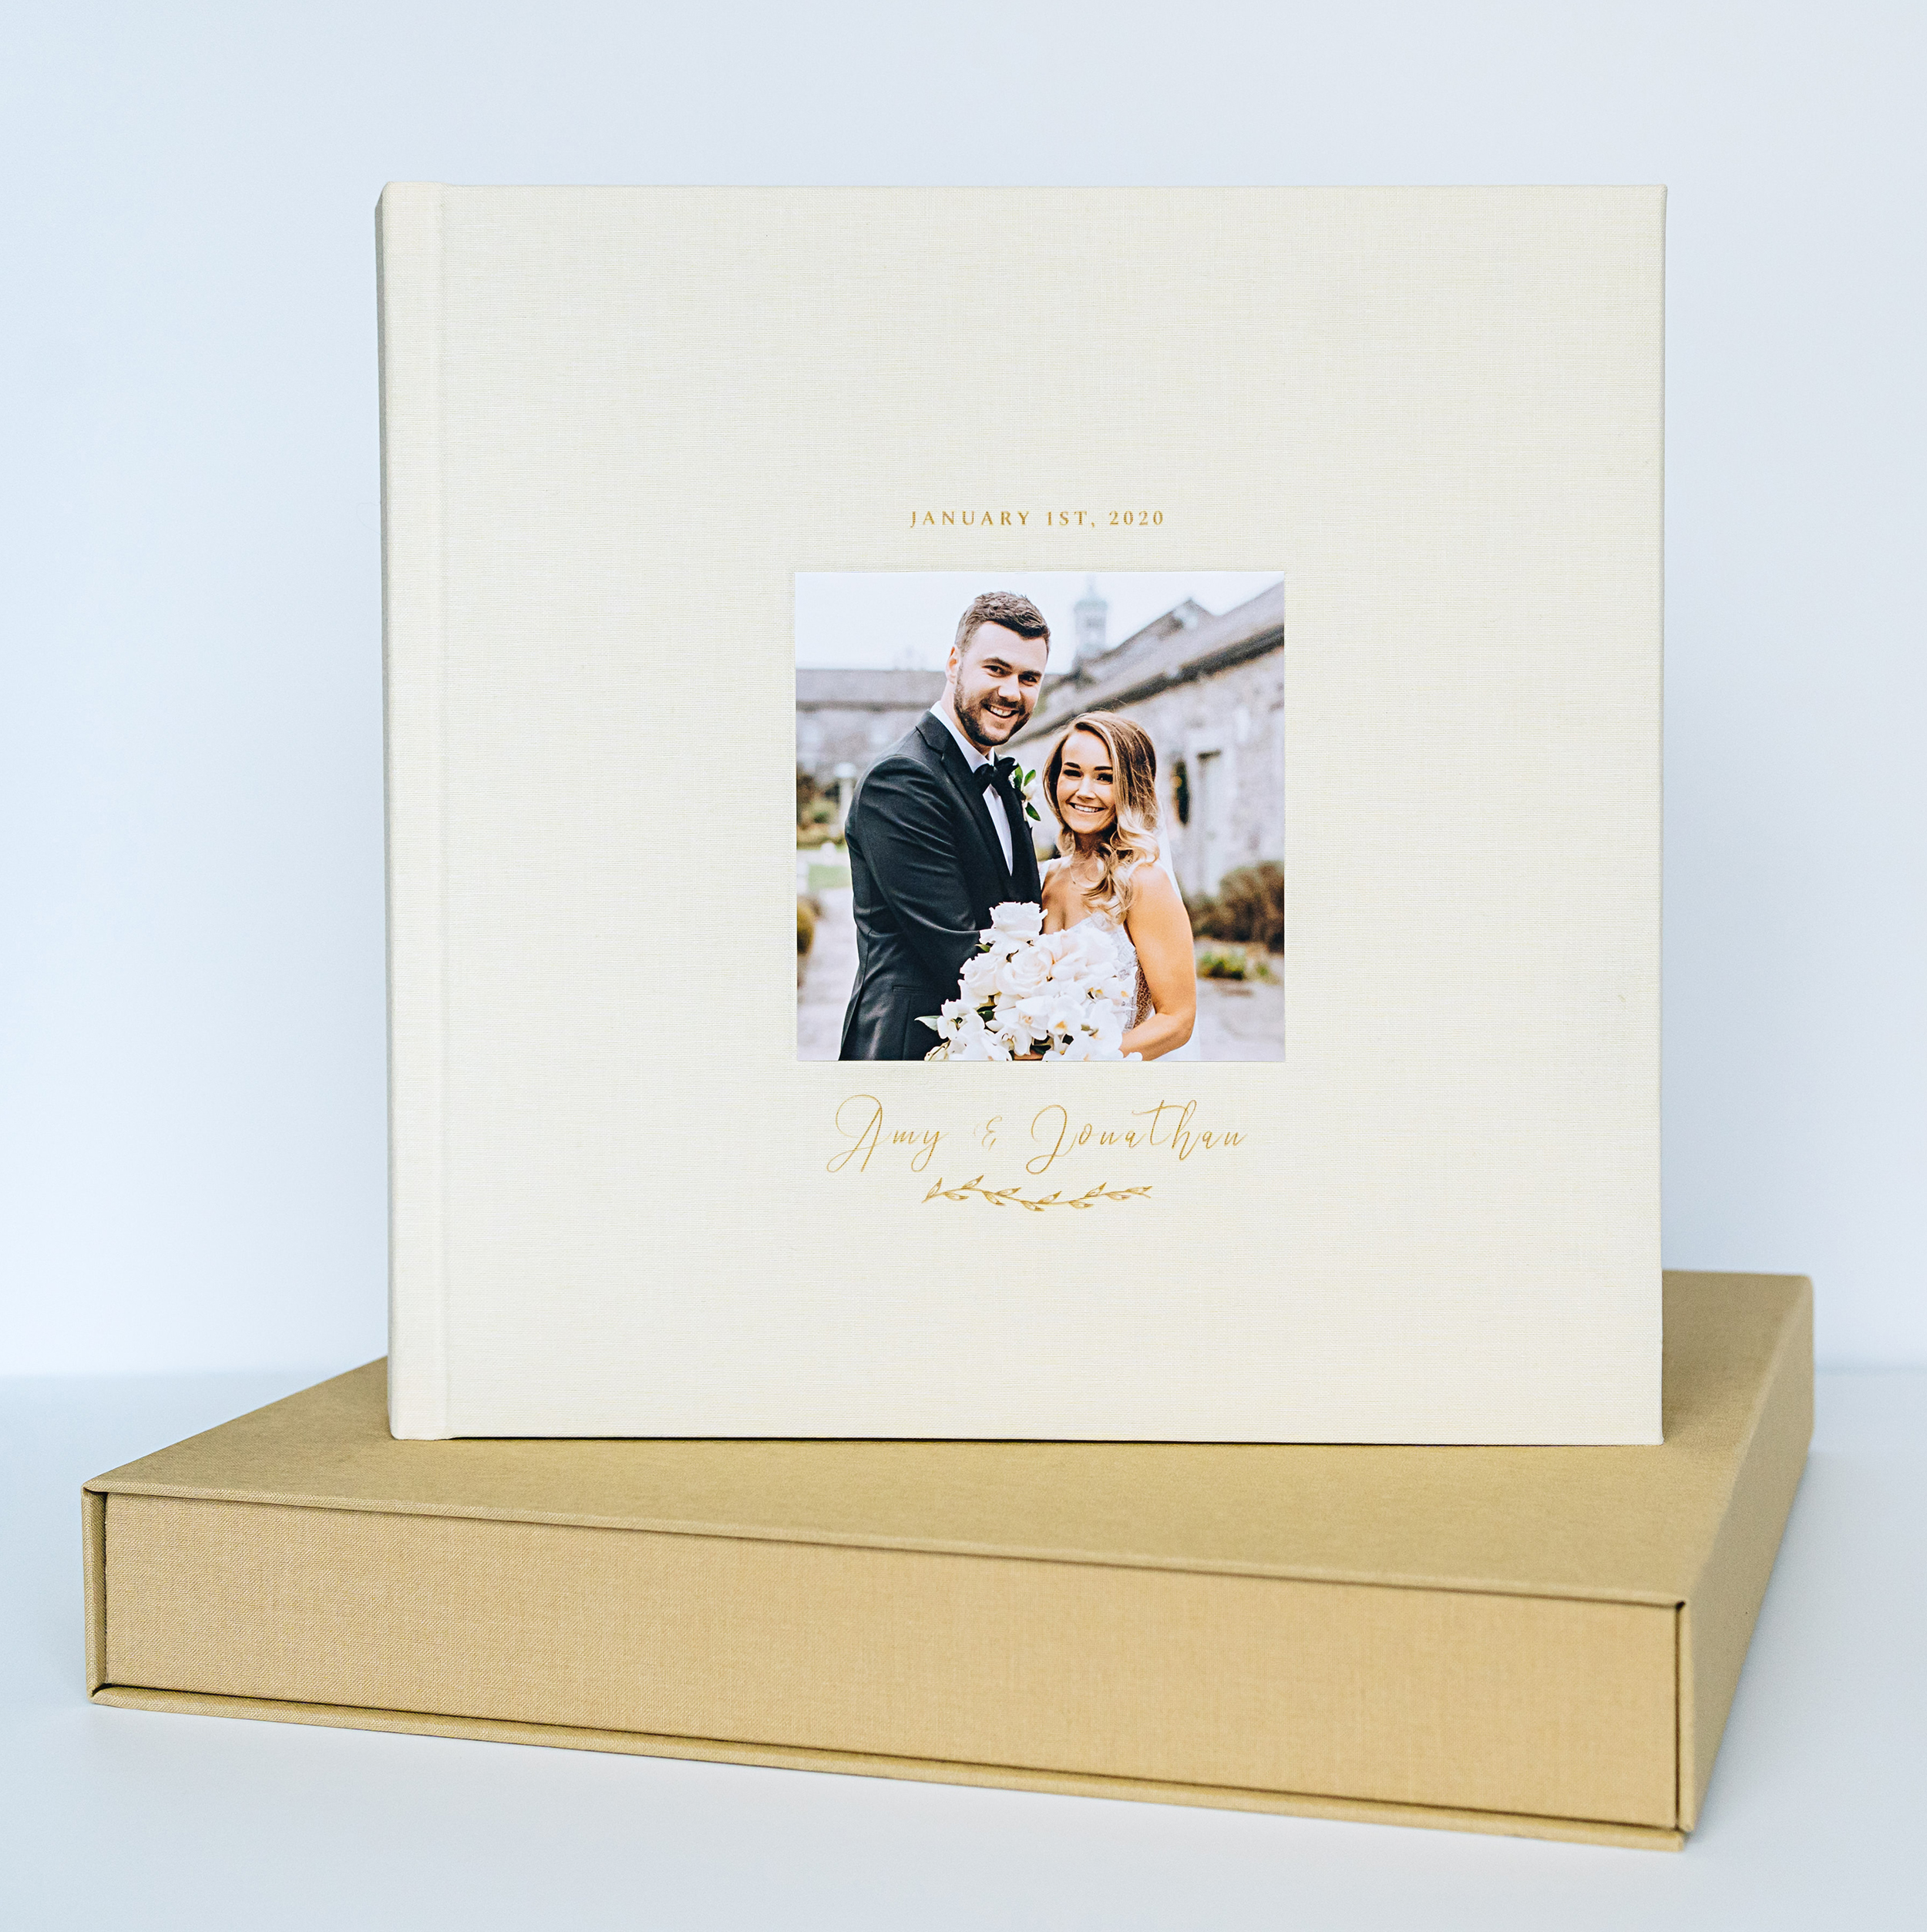 Premium photo album with box